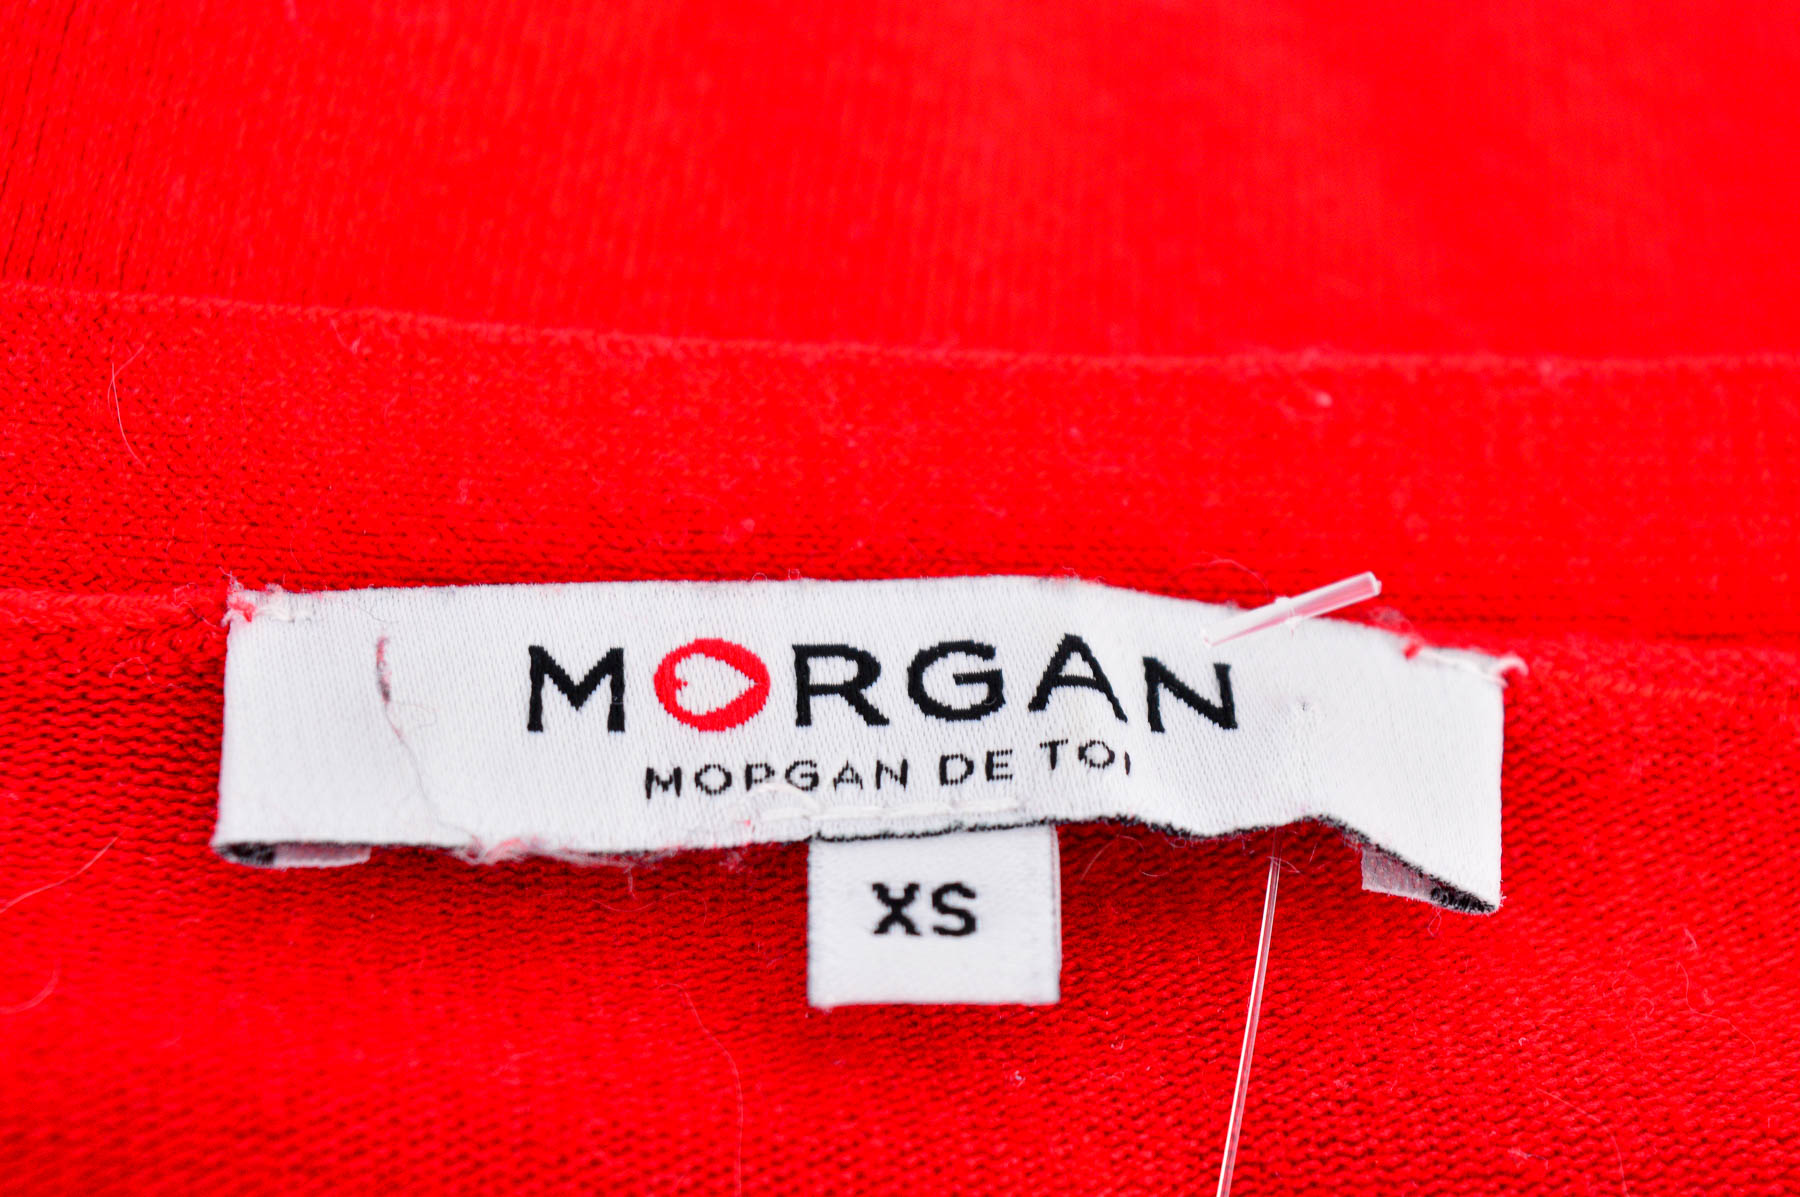 Γυναικεία μπλούζα - MORGAN DE TOI - 2